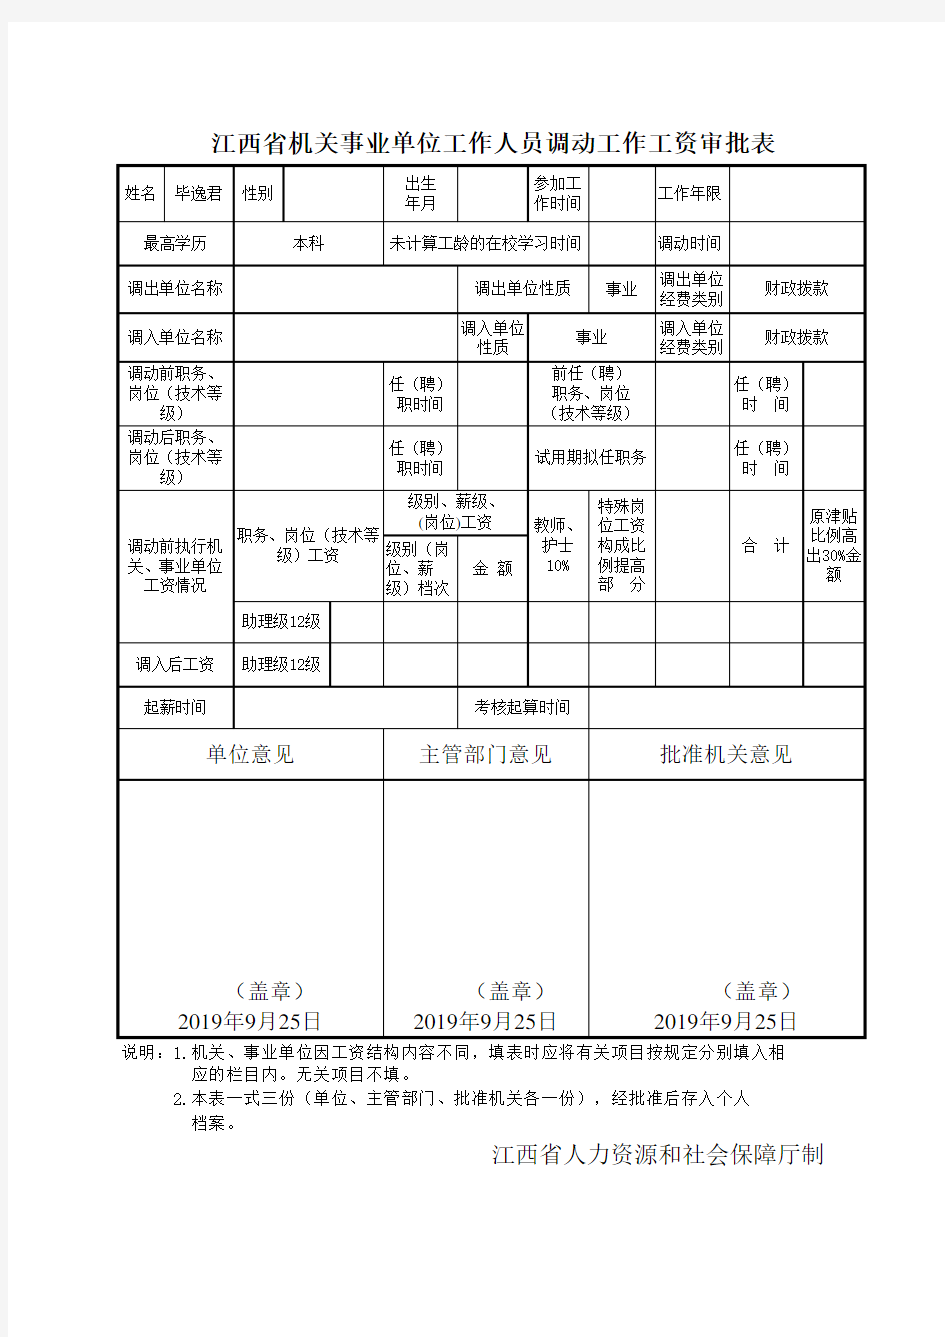 江西省机关事业单位工作人员调动工作工资审批表